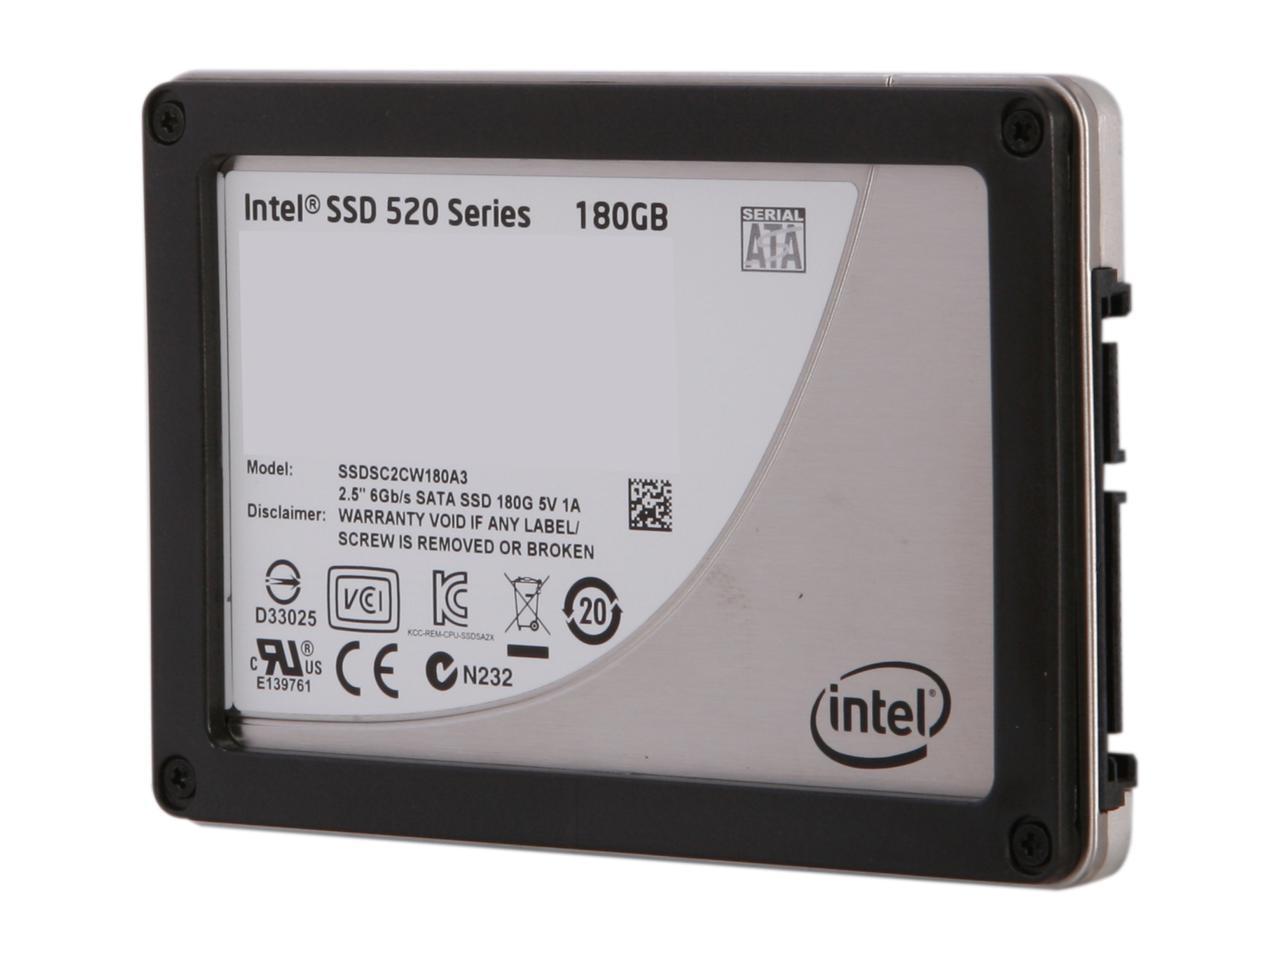 Intel 520 Series 2.5" SATA III MLC Internal State Drive SSDSC2CW180A310 - Newegg.com